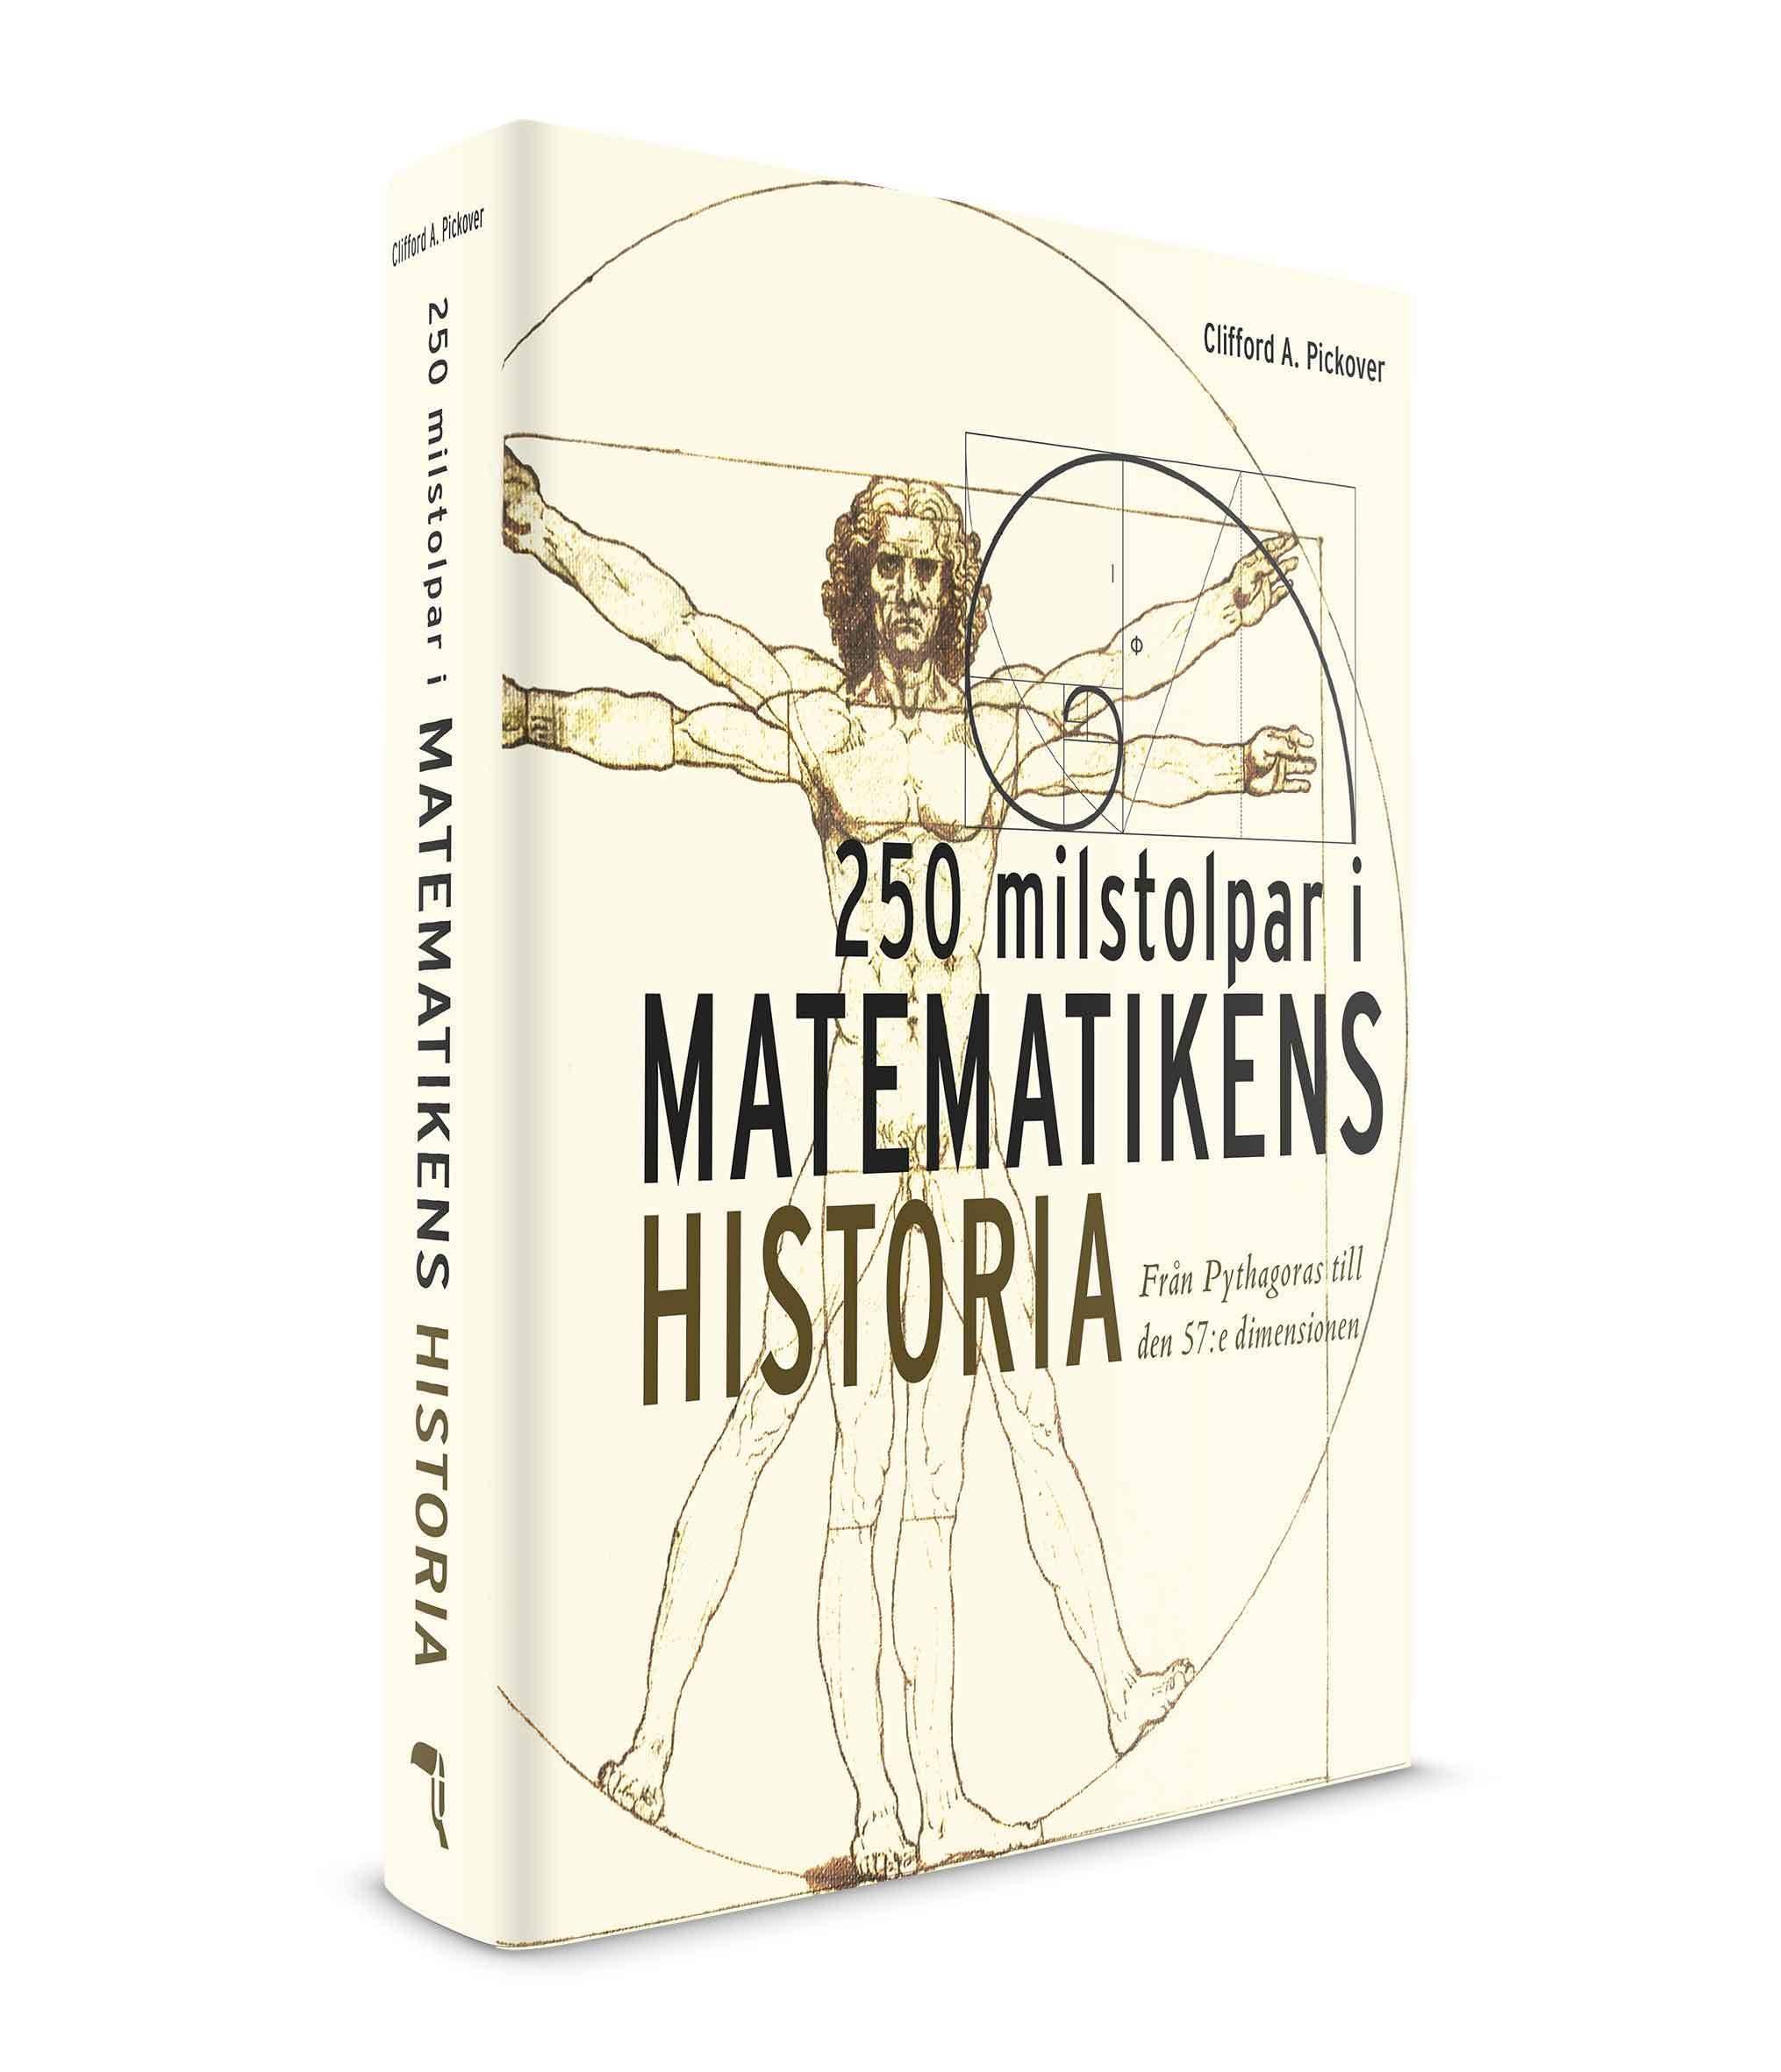 250 milstolpar i matematikens historia från Pythagoras till 57:e dimensionen